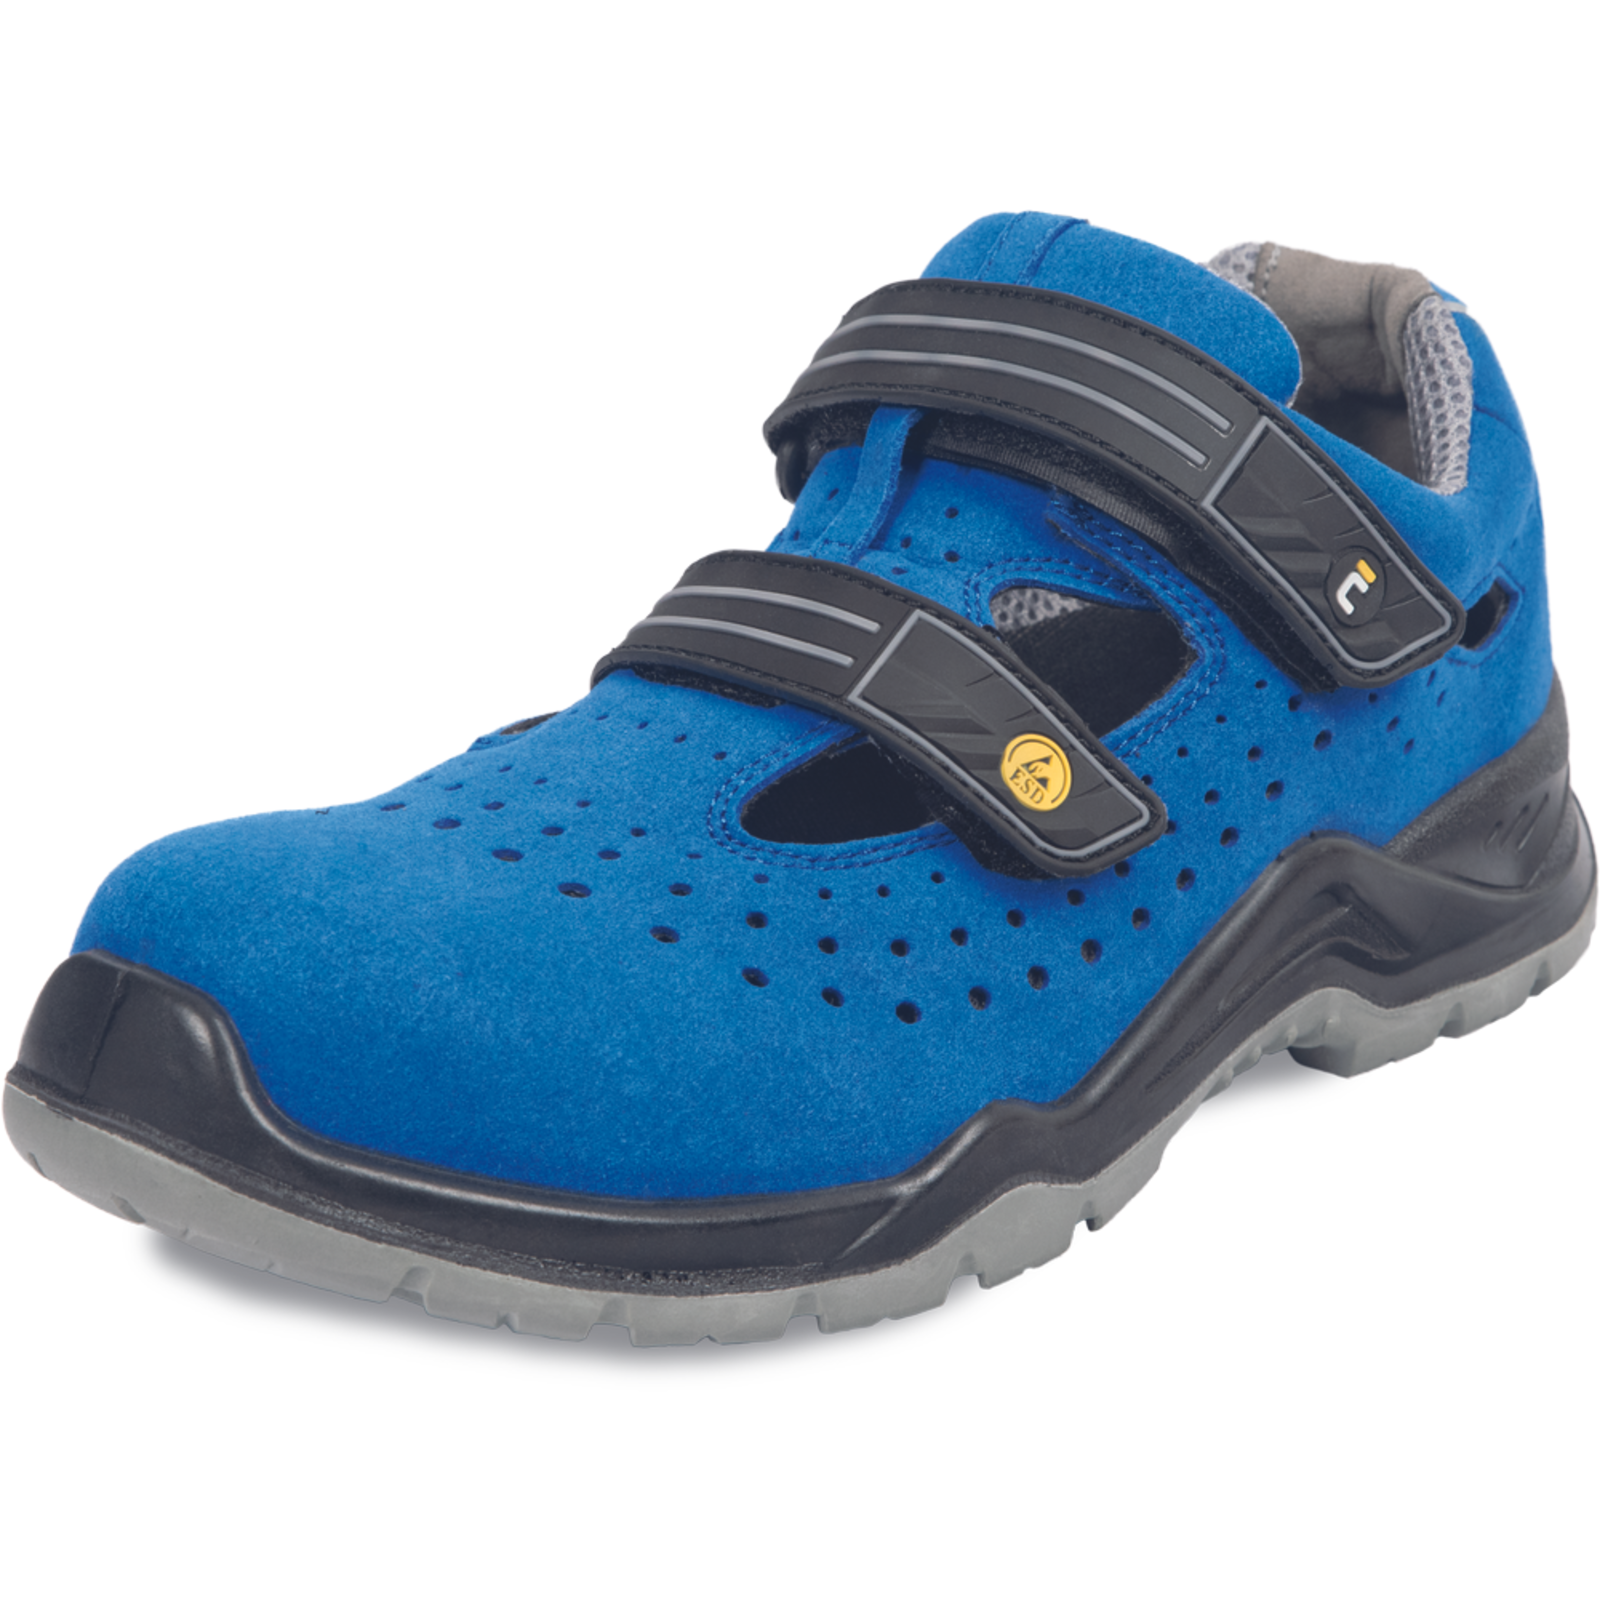 Bezpečnostné pracovné sandále Cerva Hagewill S1P - veľkosť: 37, farba: modrá